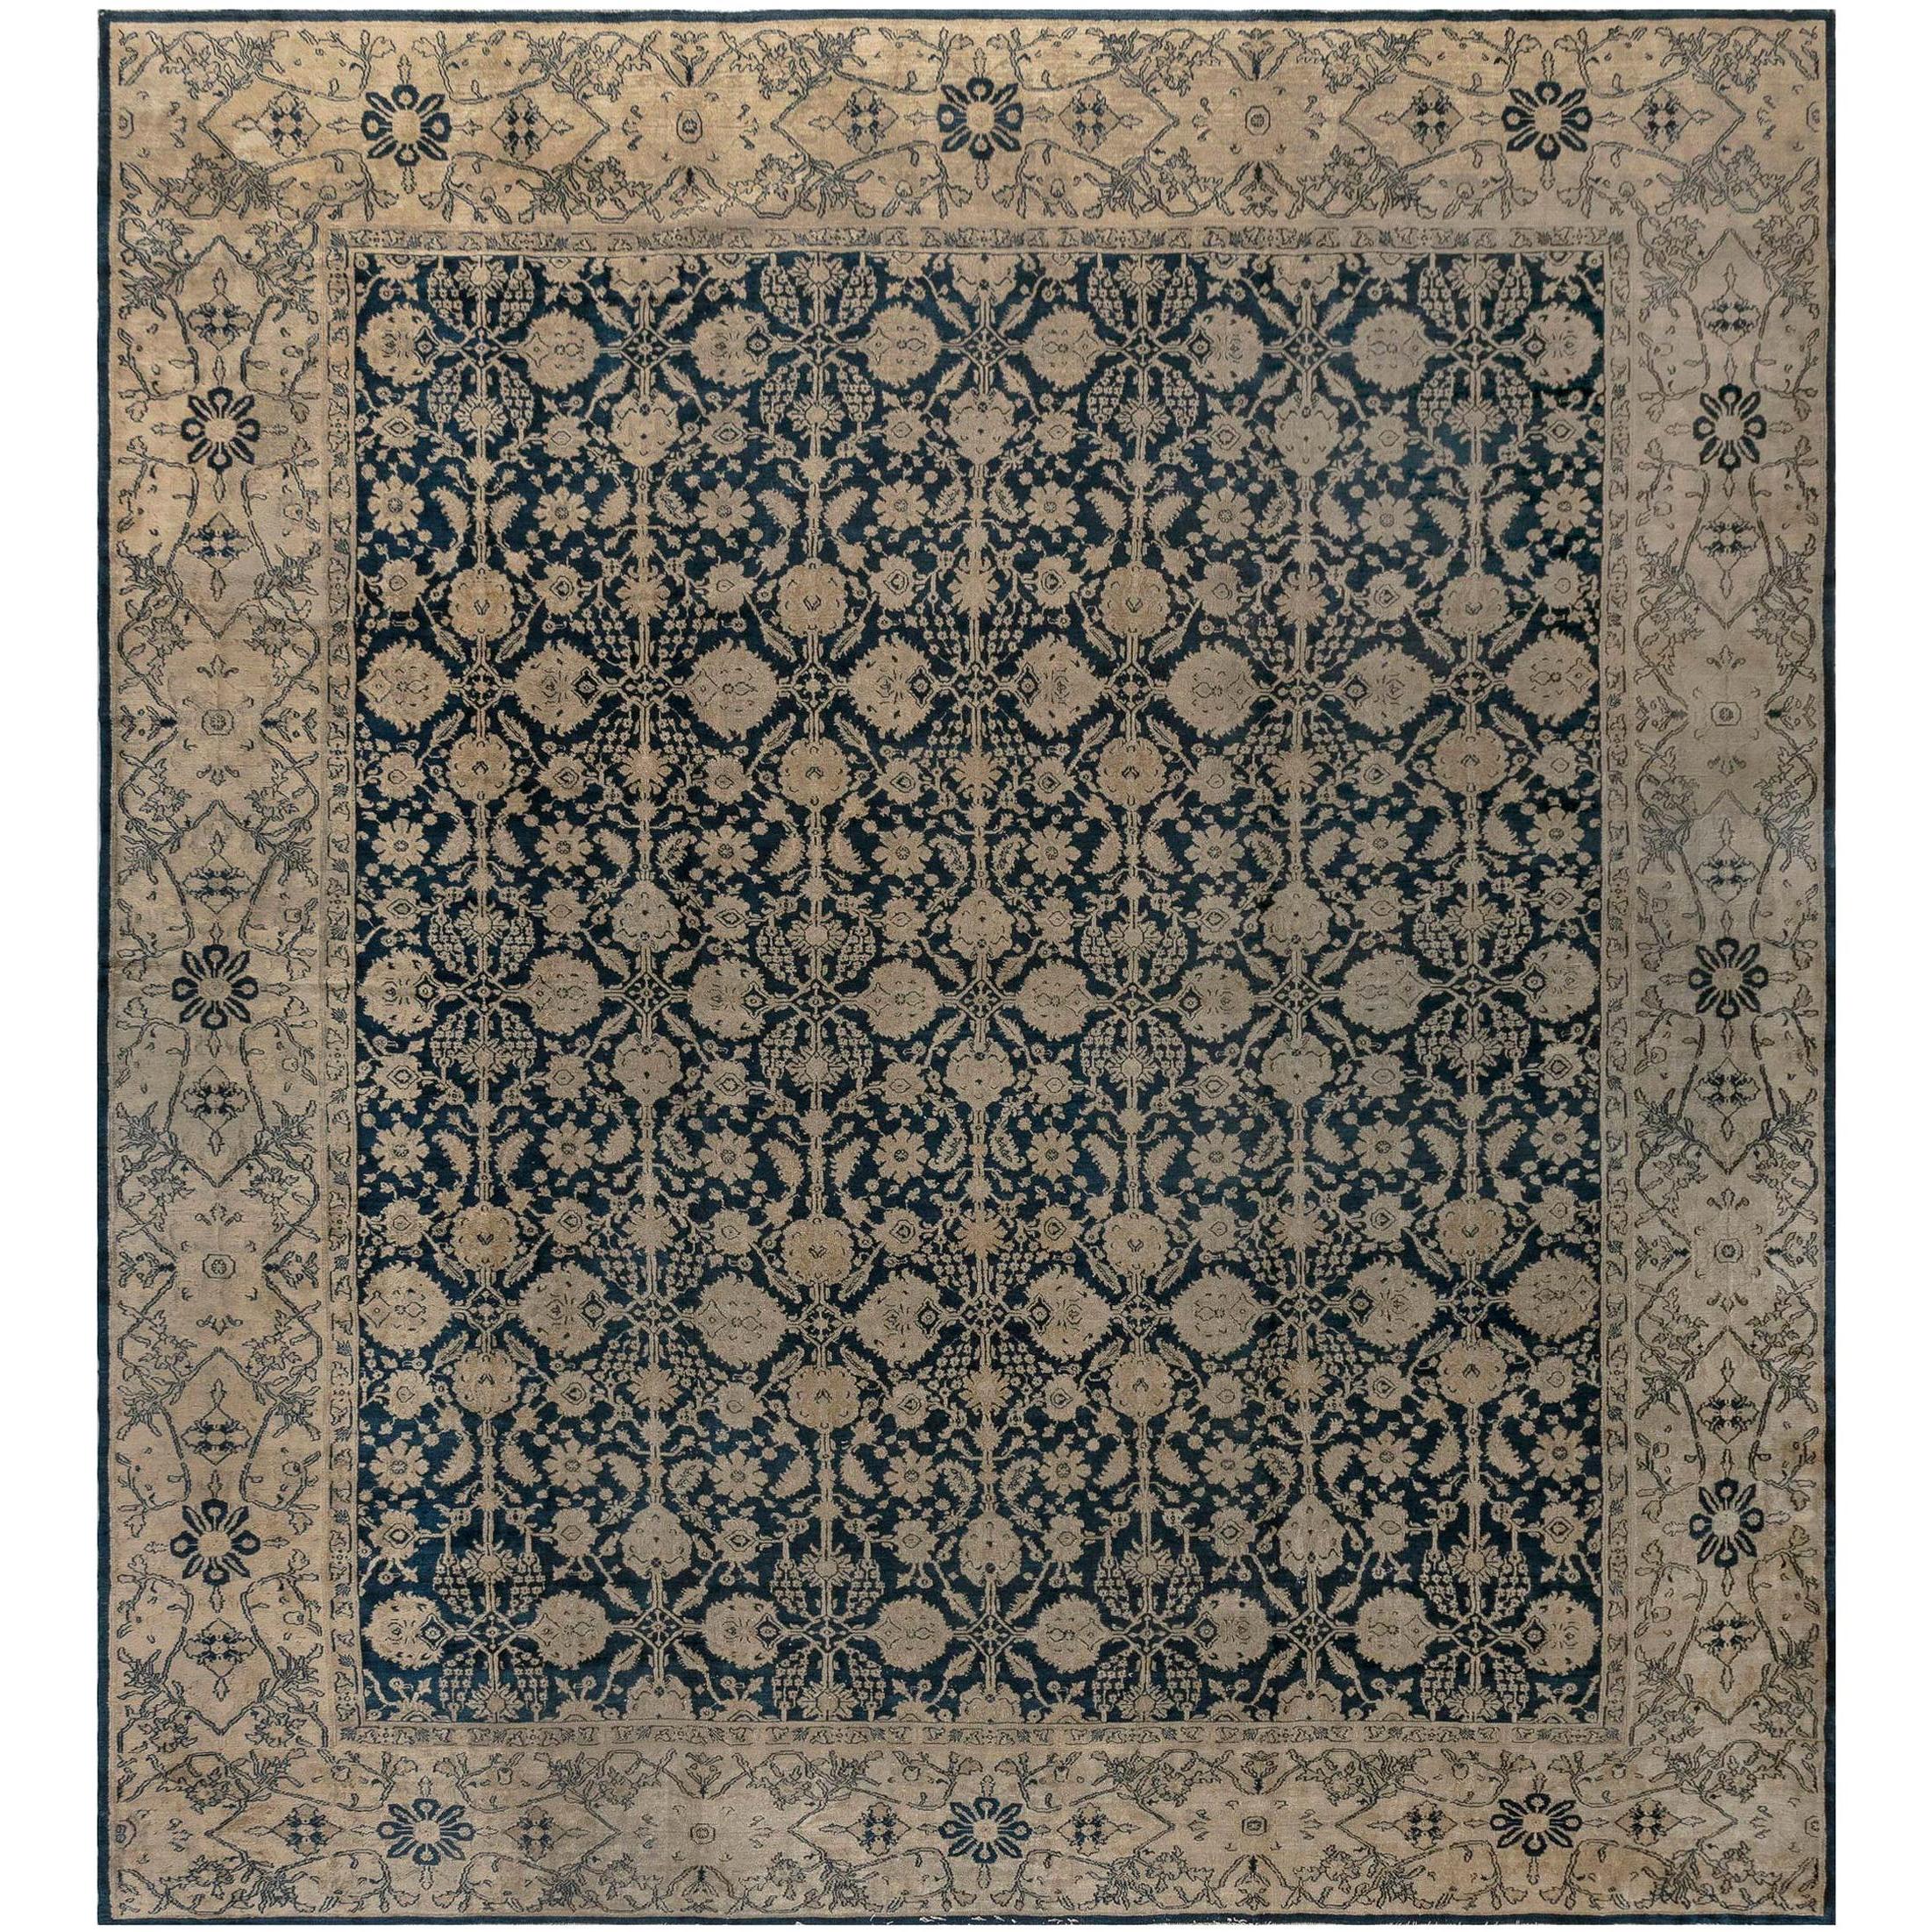 Authentique tapis indien Agra du 19ème siècle